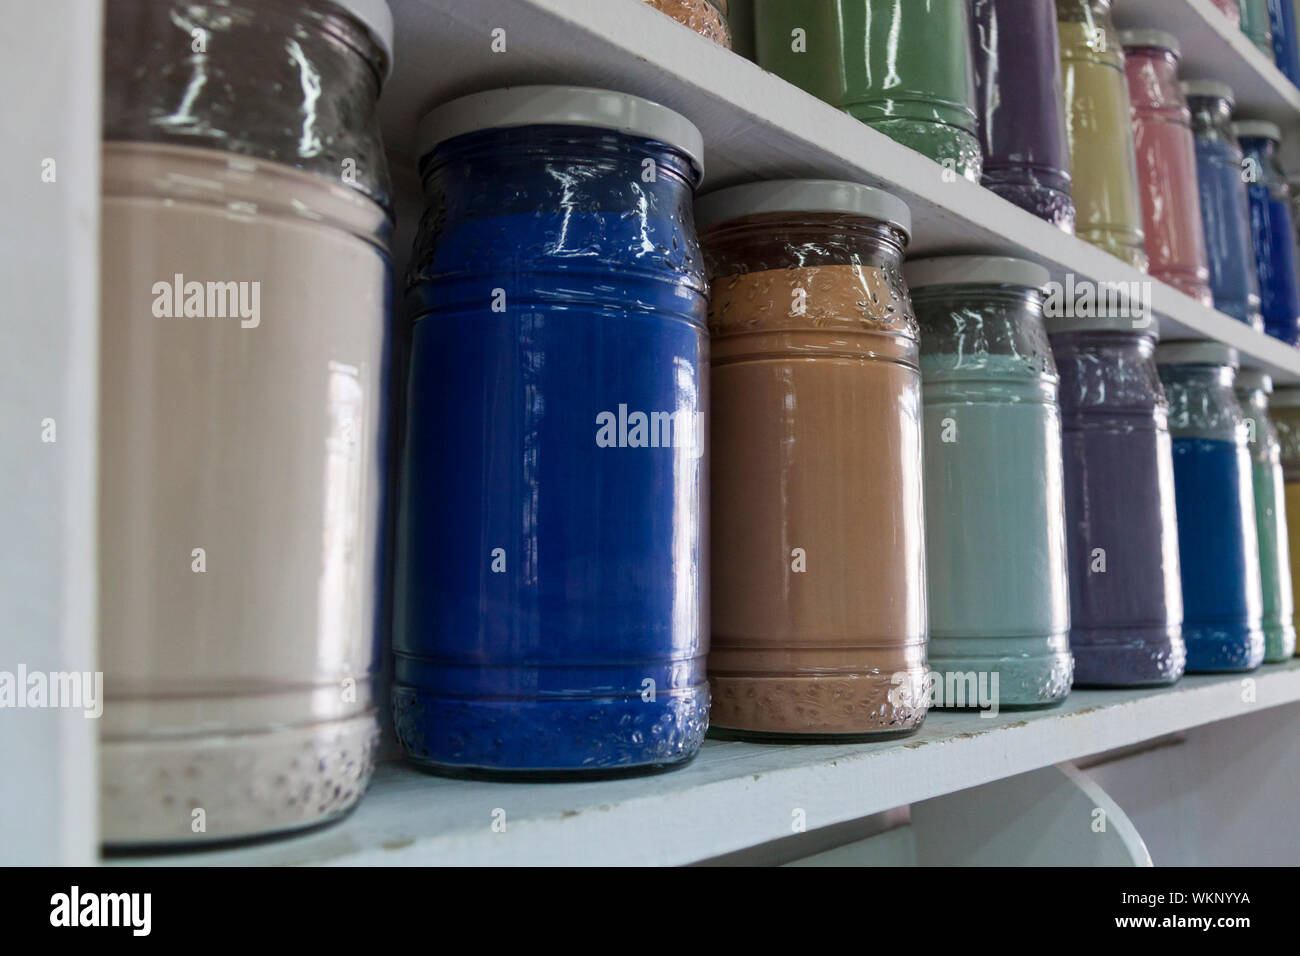 Estanterías con frascos de vidrio de pigmentos coloridos Foto de stock